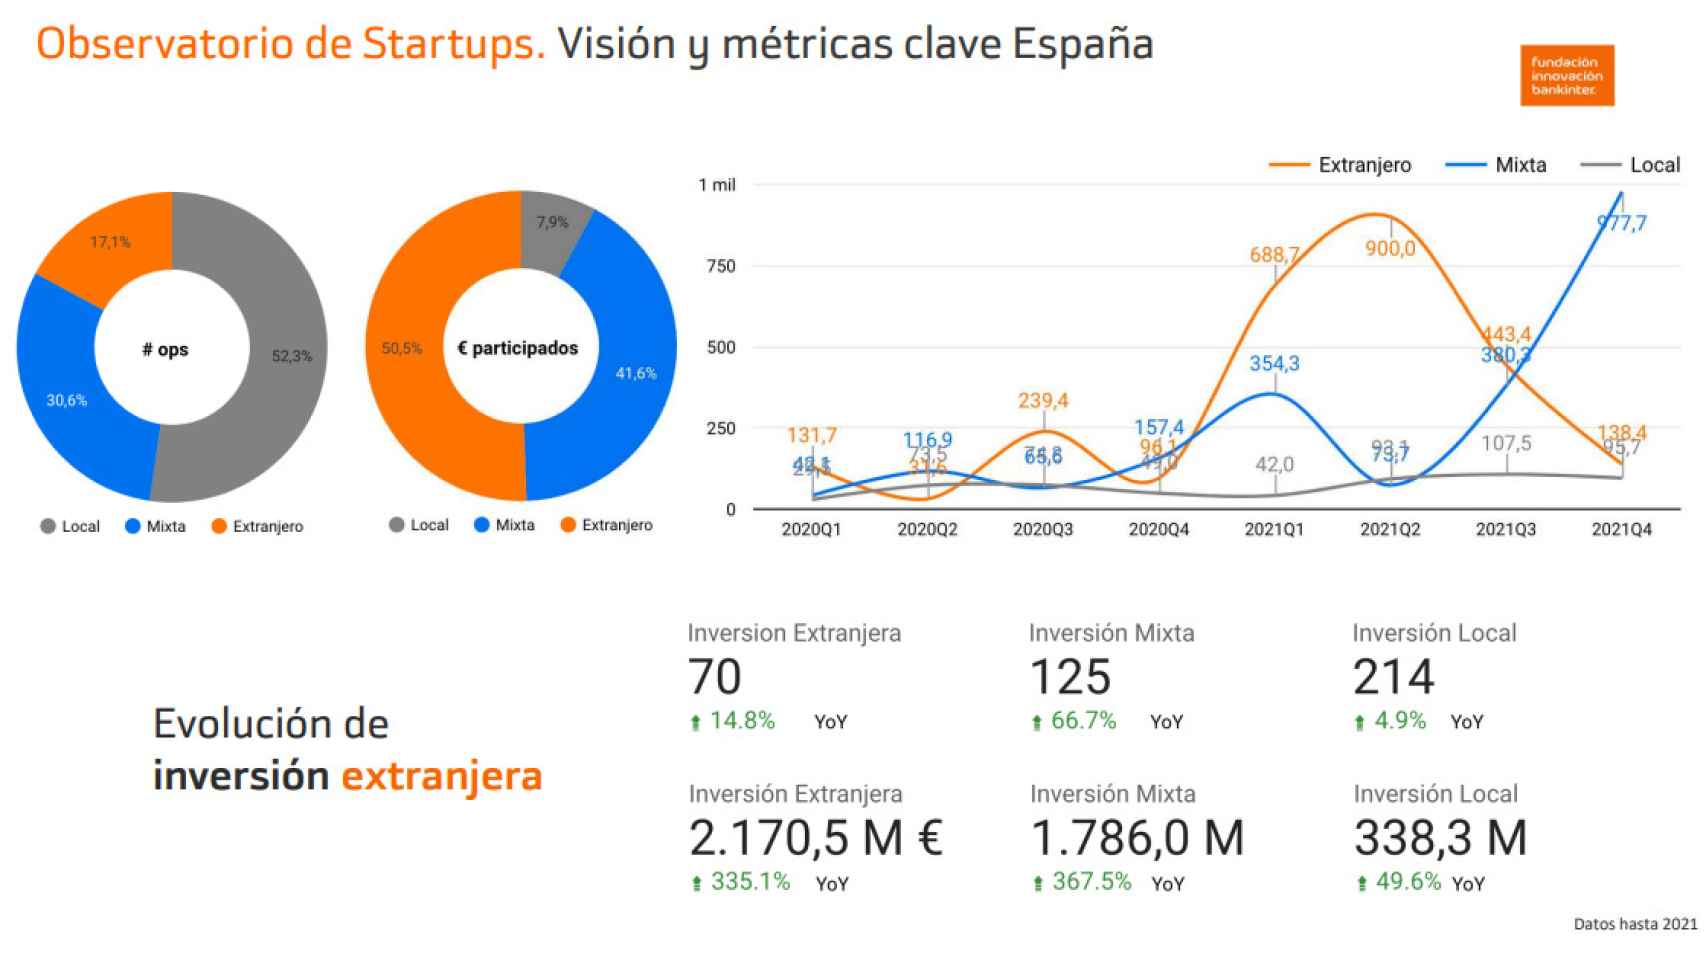 La mayor presencia de fondos internacionales en el ecosistema startup español denota la confianza depositada en las startups españolas.